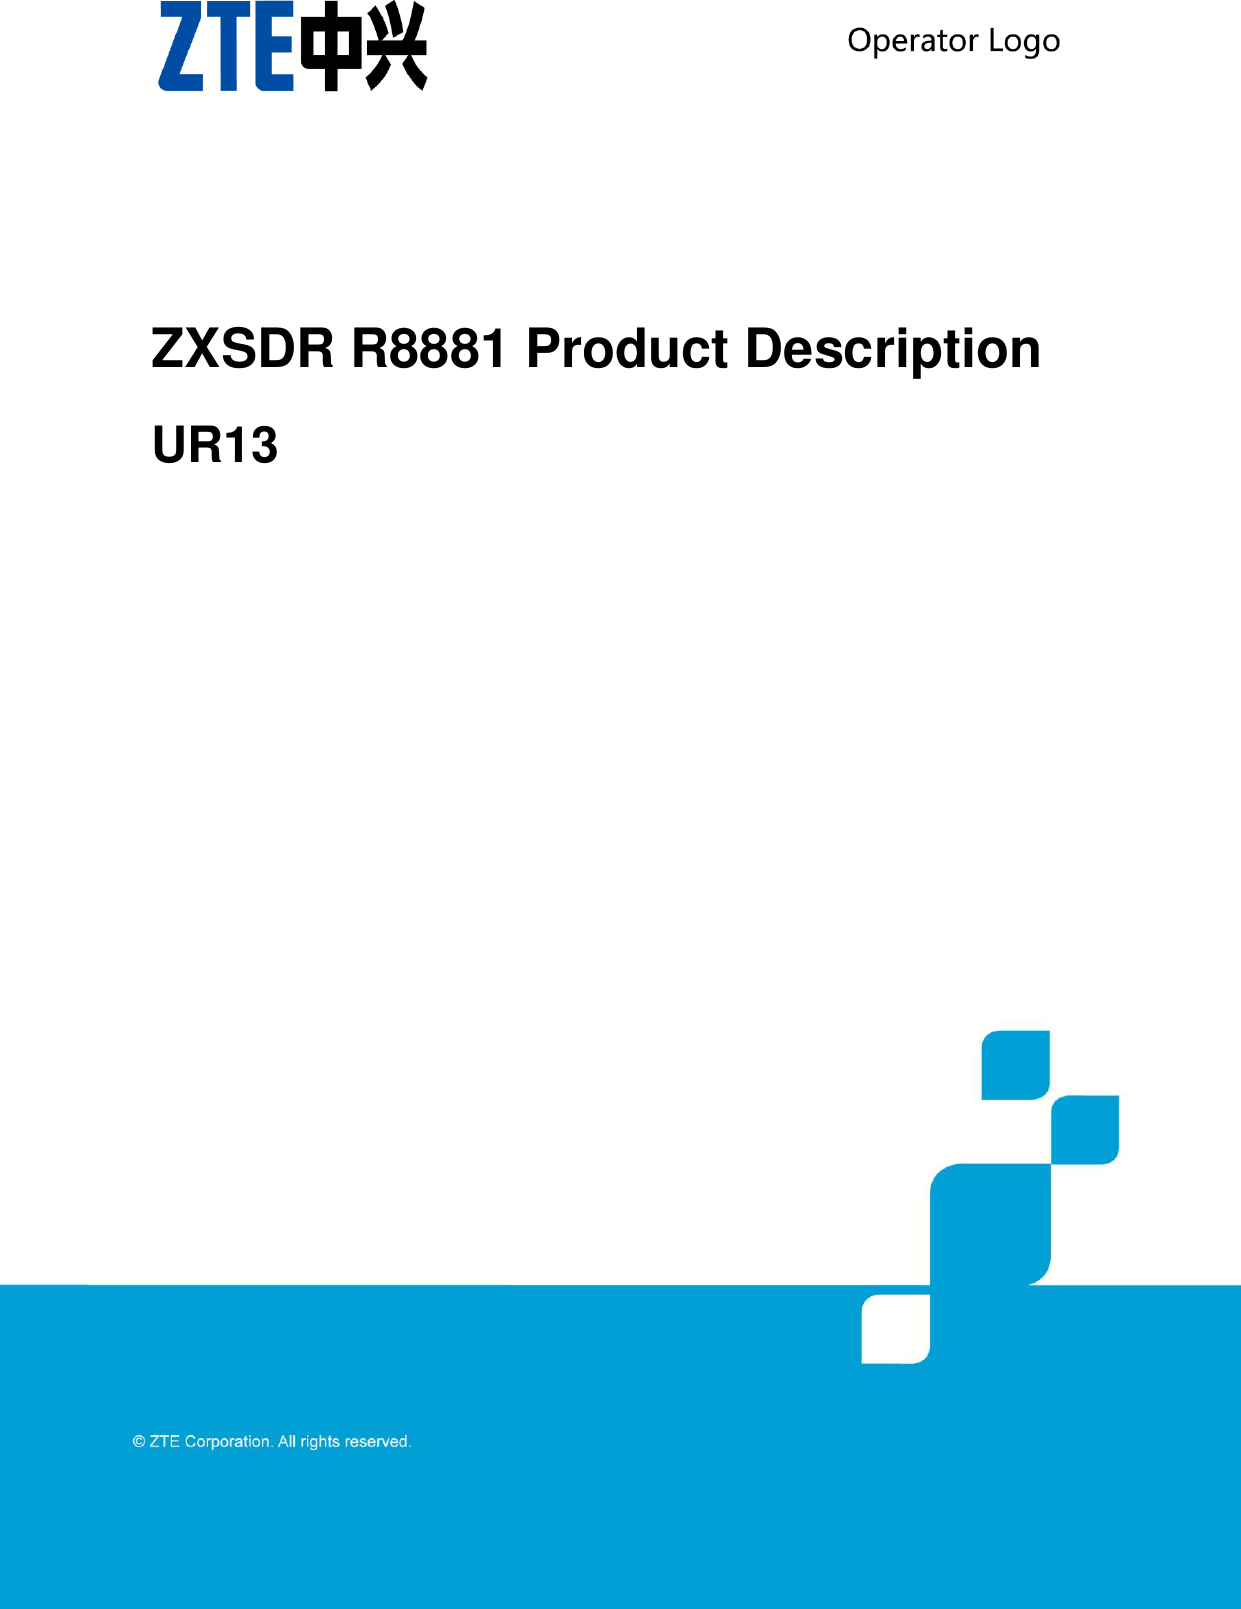    ZXSDR R8881 Product Description UR13  